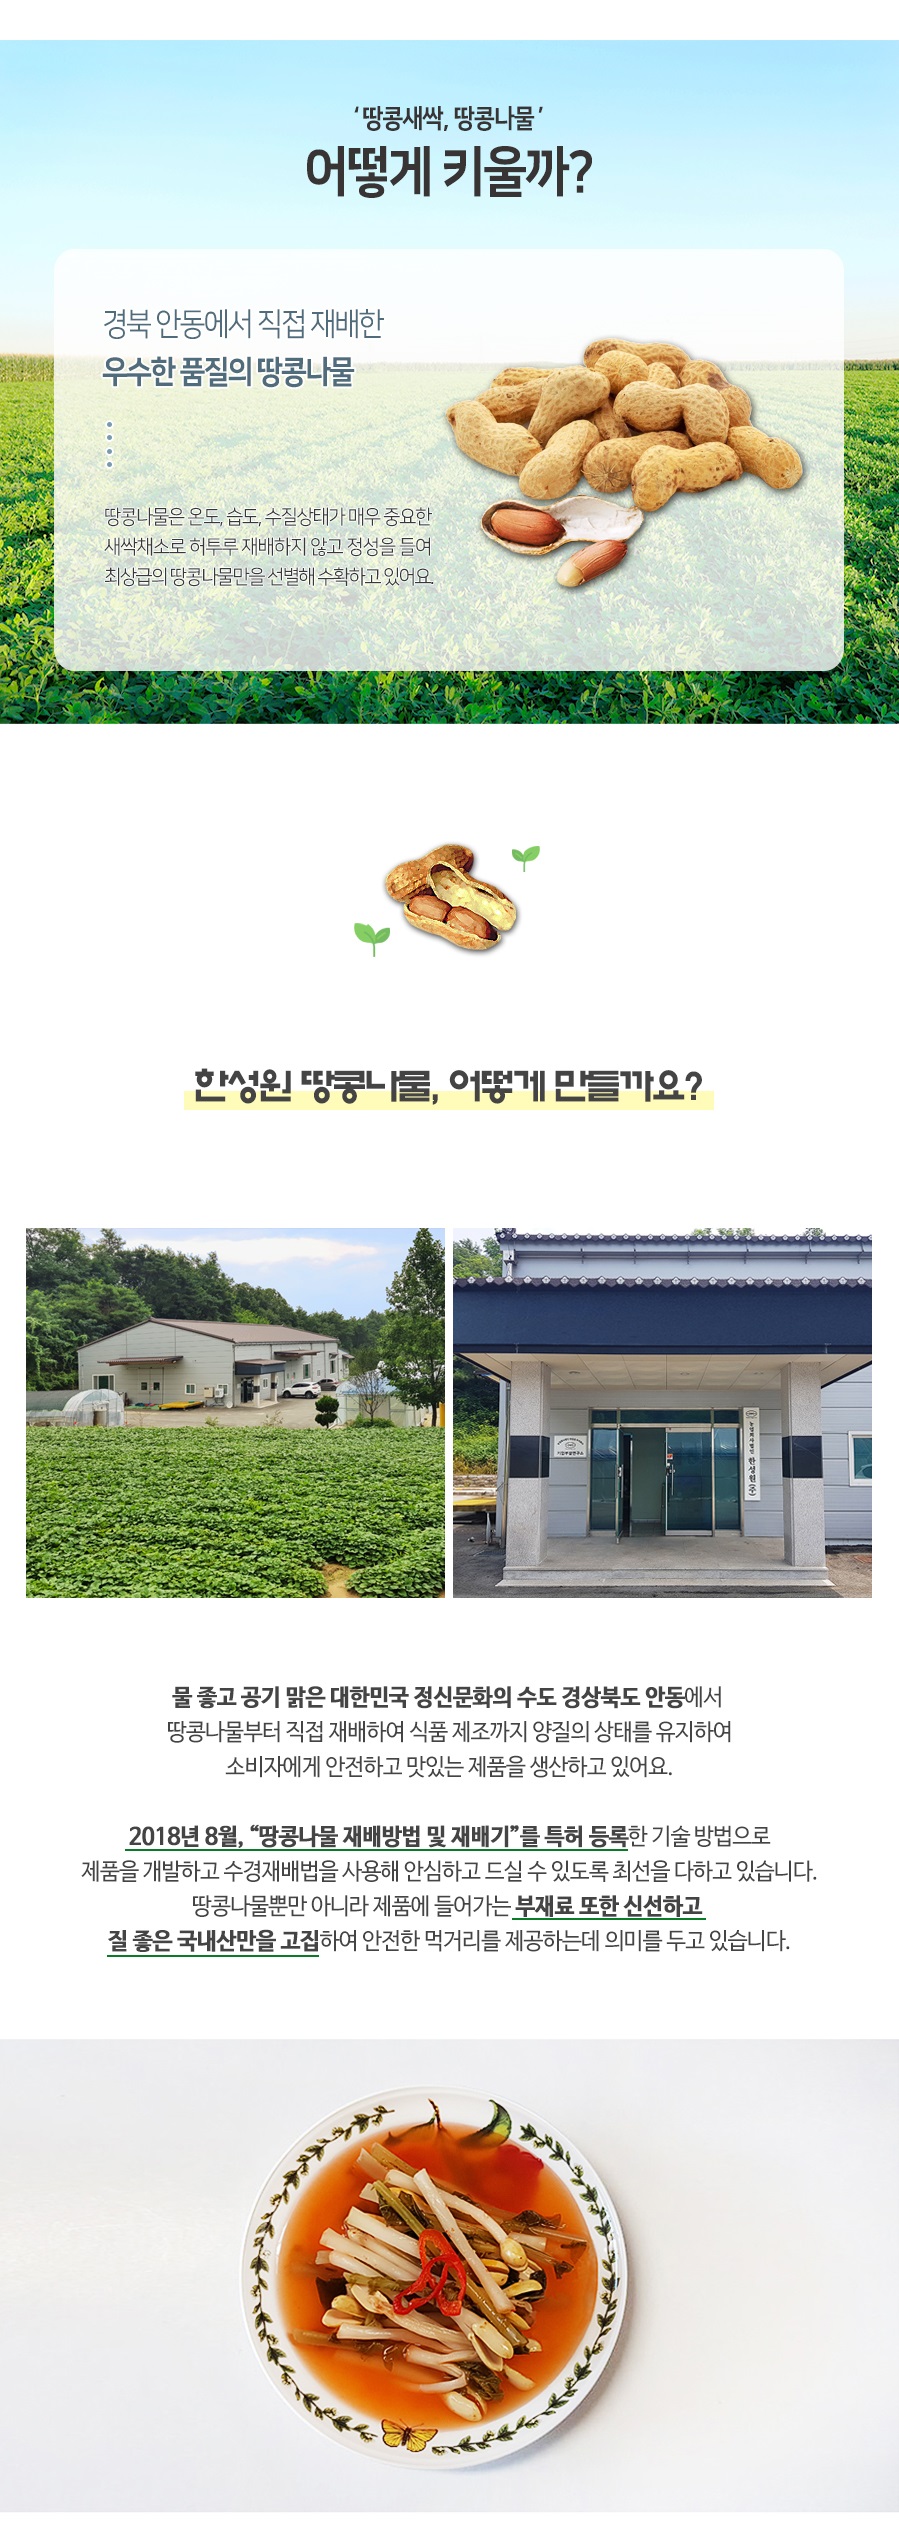 땅콩나물물김치_위메프2.jpg